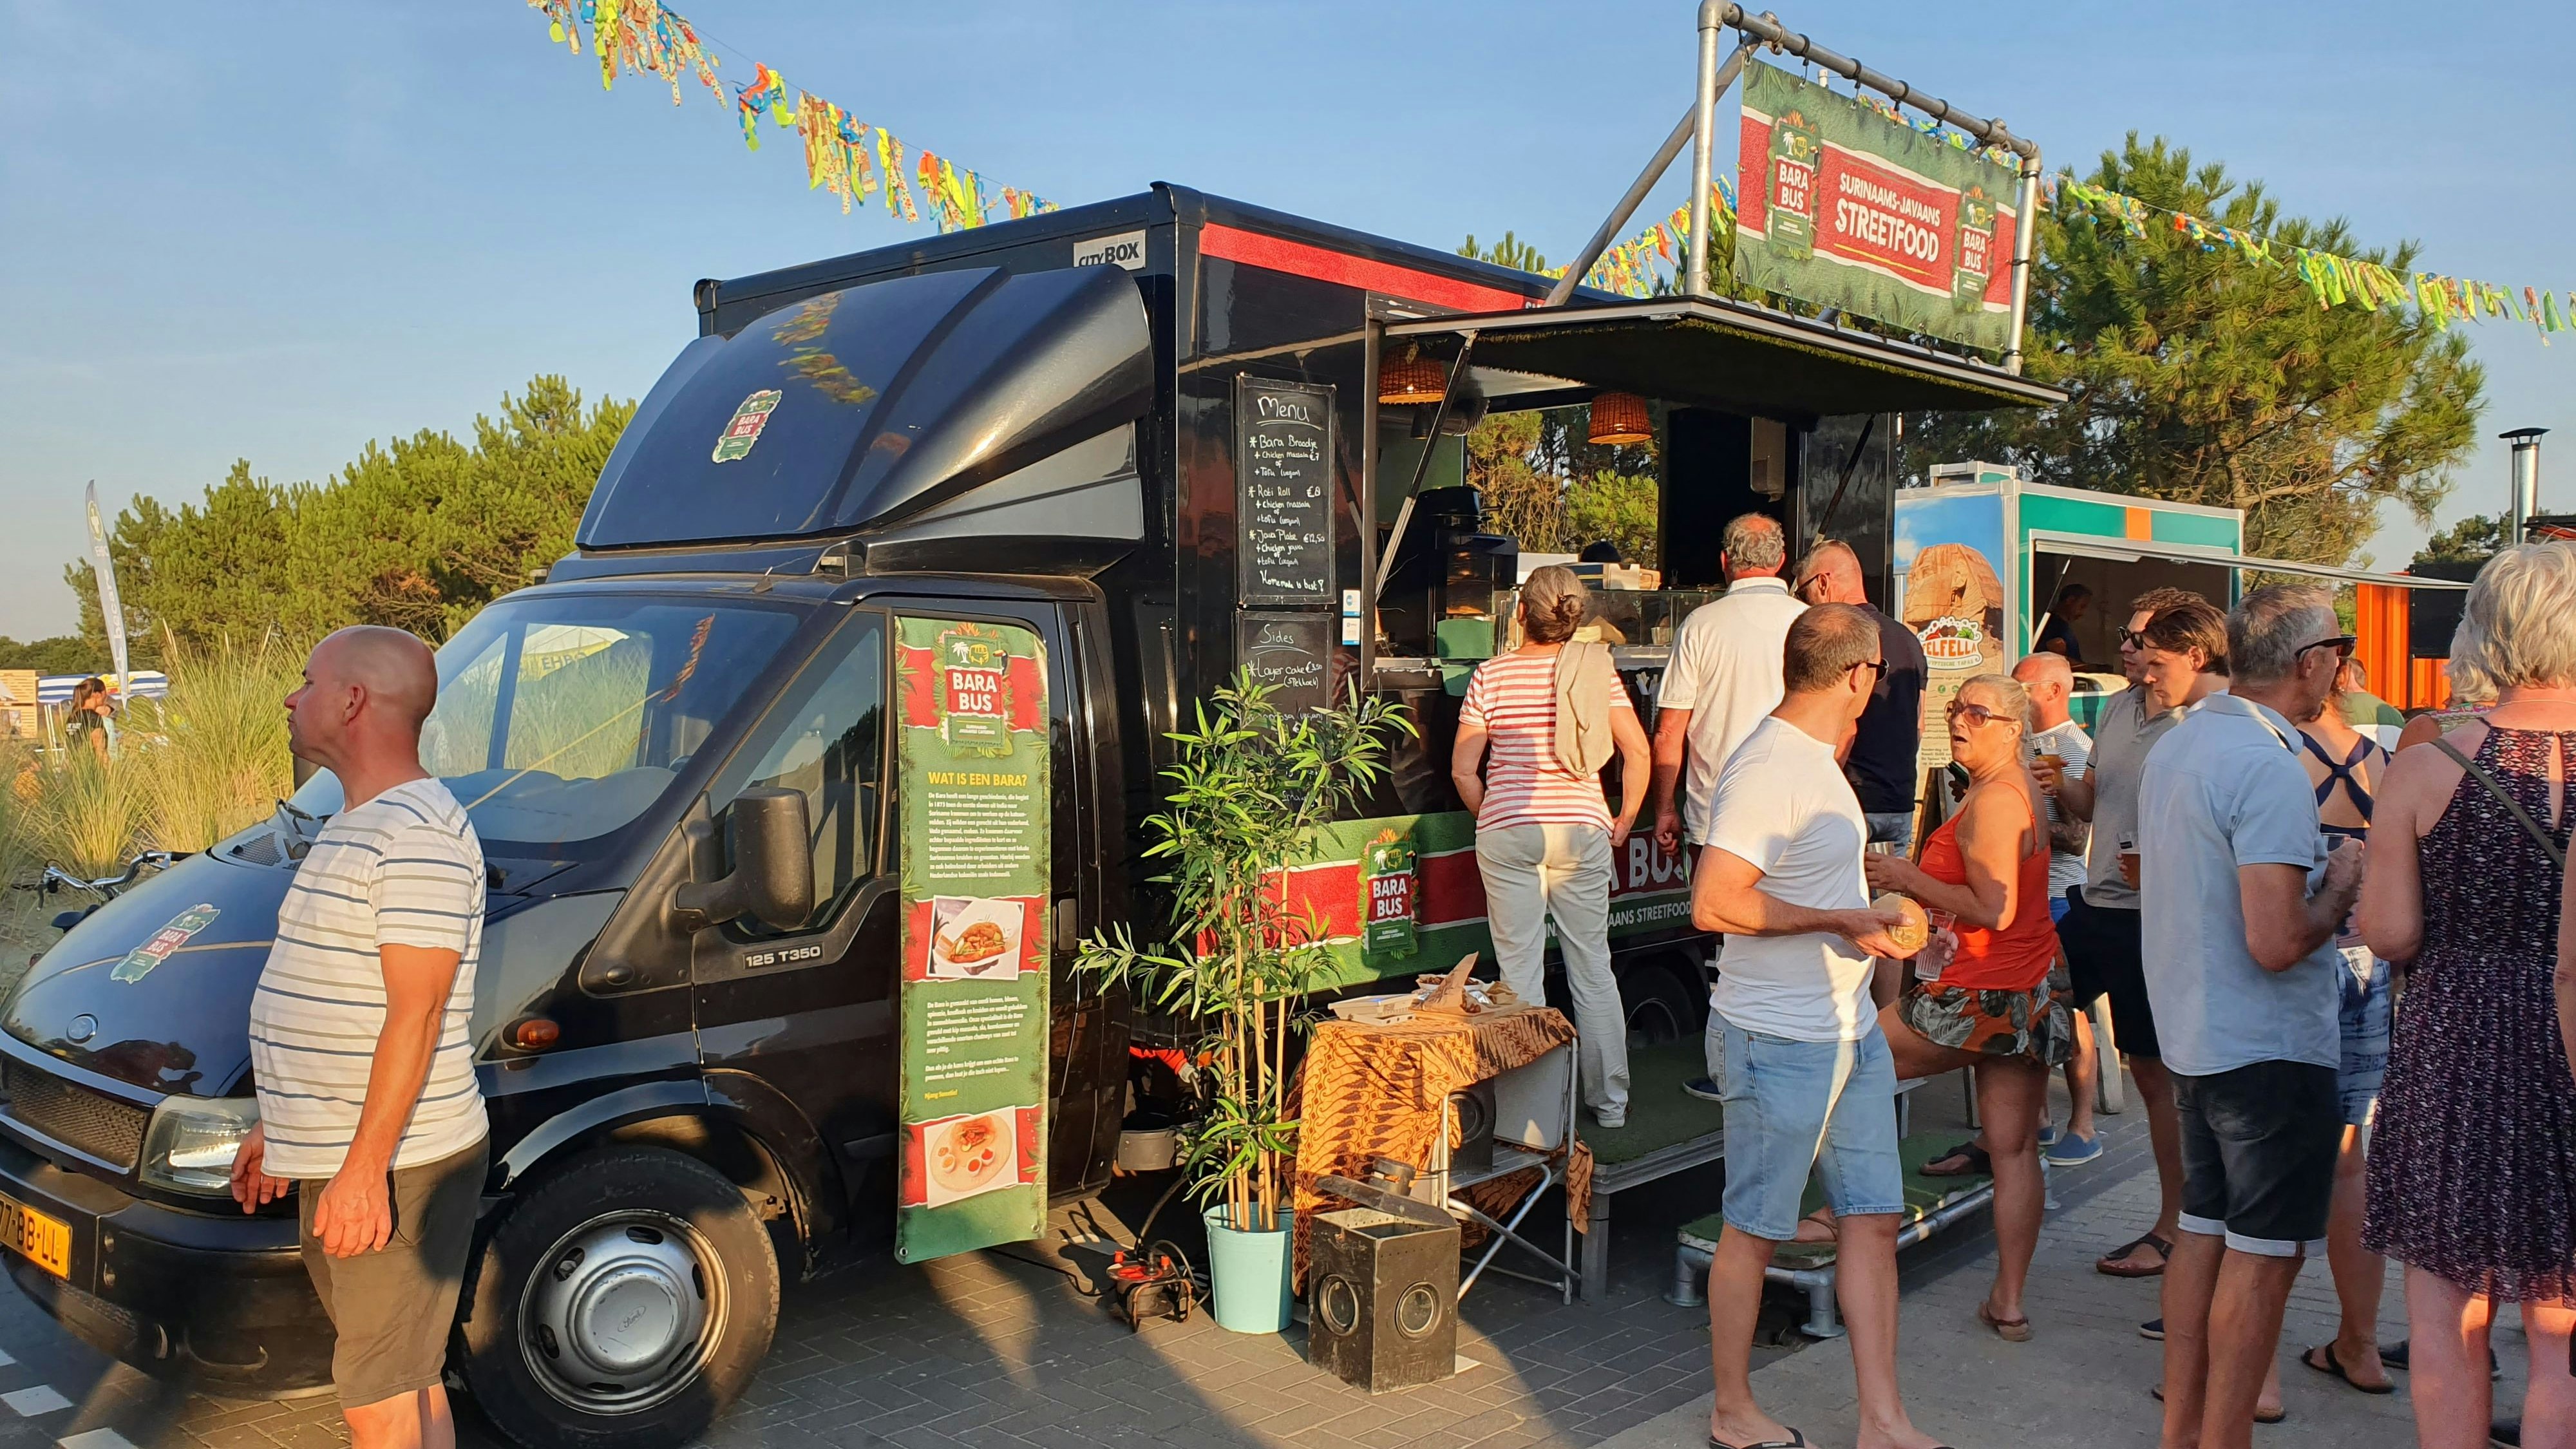 Trucks statt Boote: Der Barßeler Hafen wird vom 29. bis zum 31. Juli zur Essensmeile. Dabei soll es auch Livemusik und Angebote für Kinder geben. Foto: Boese Events